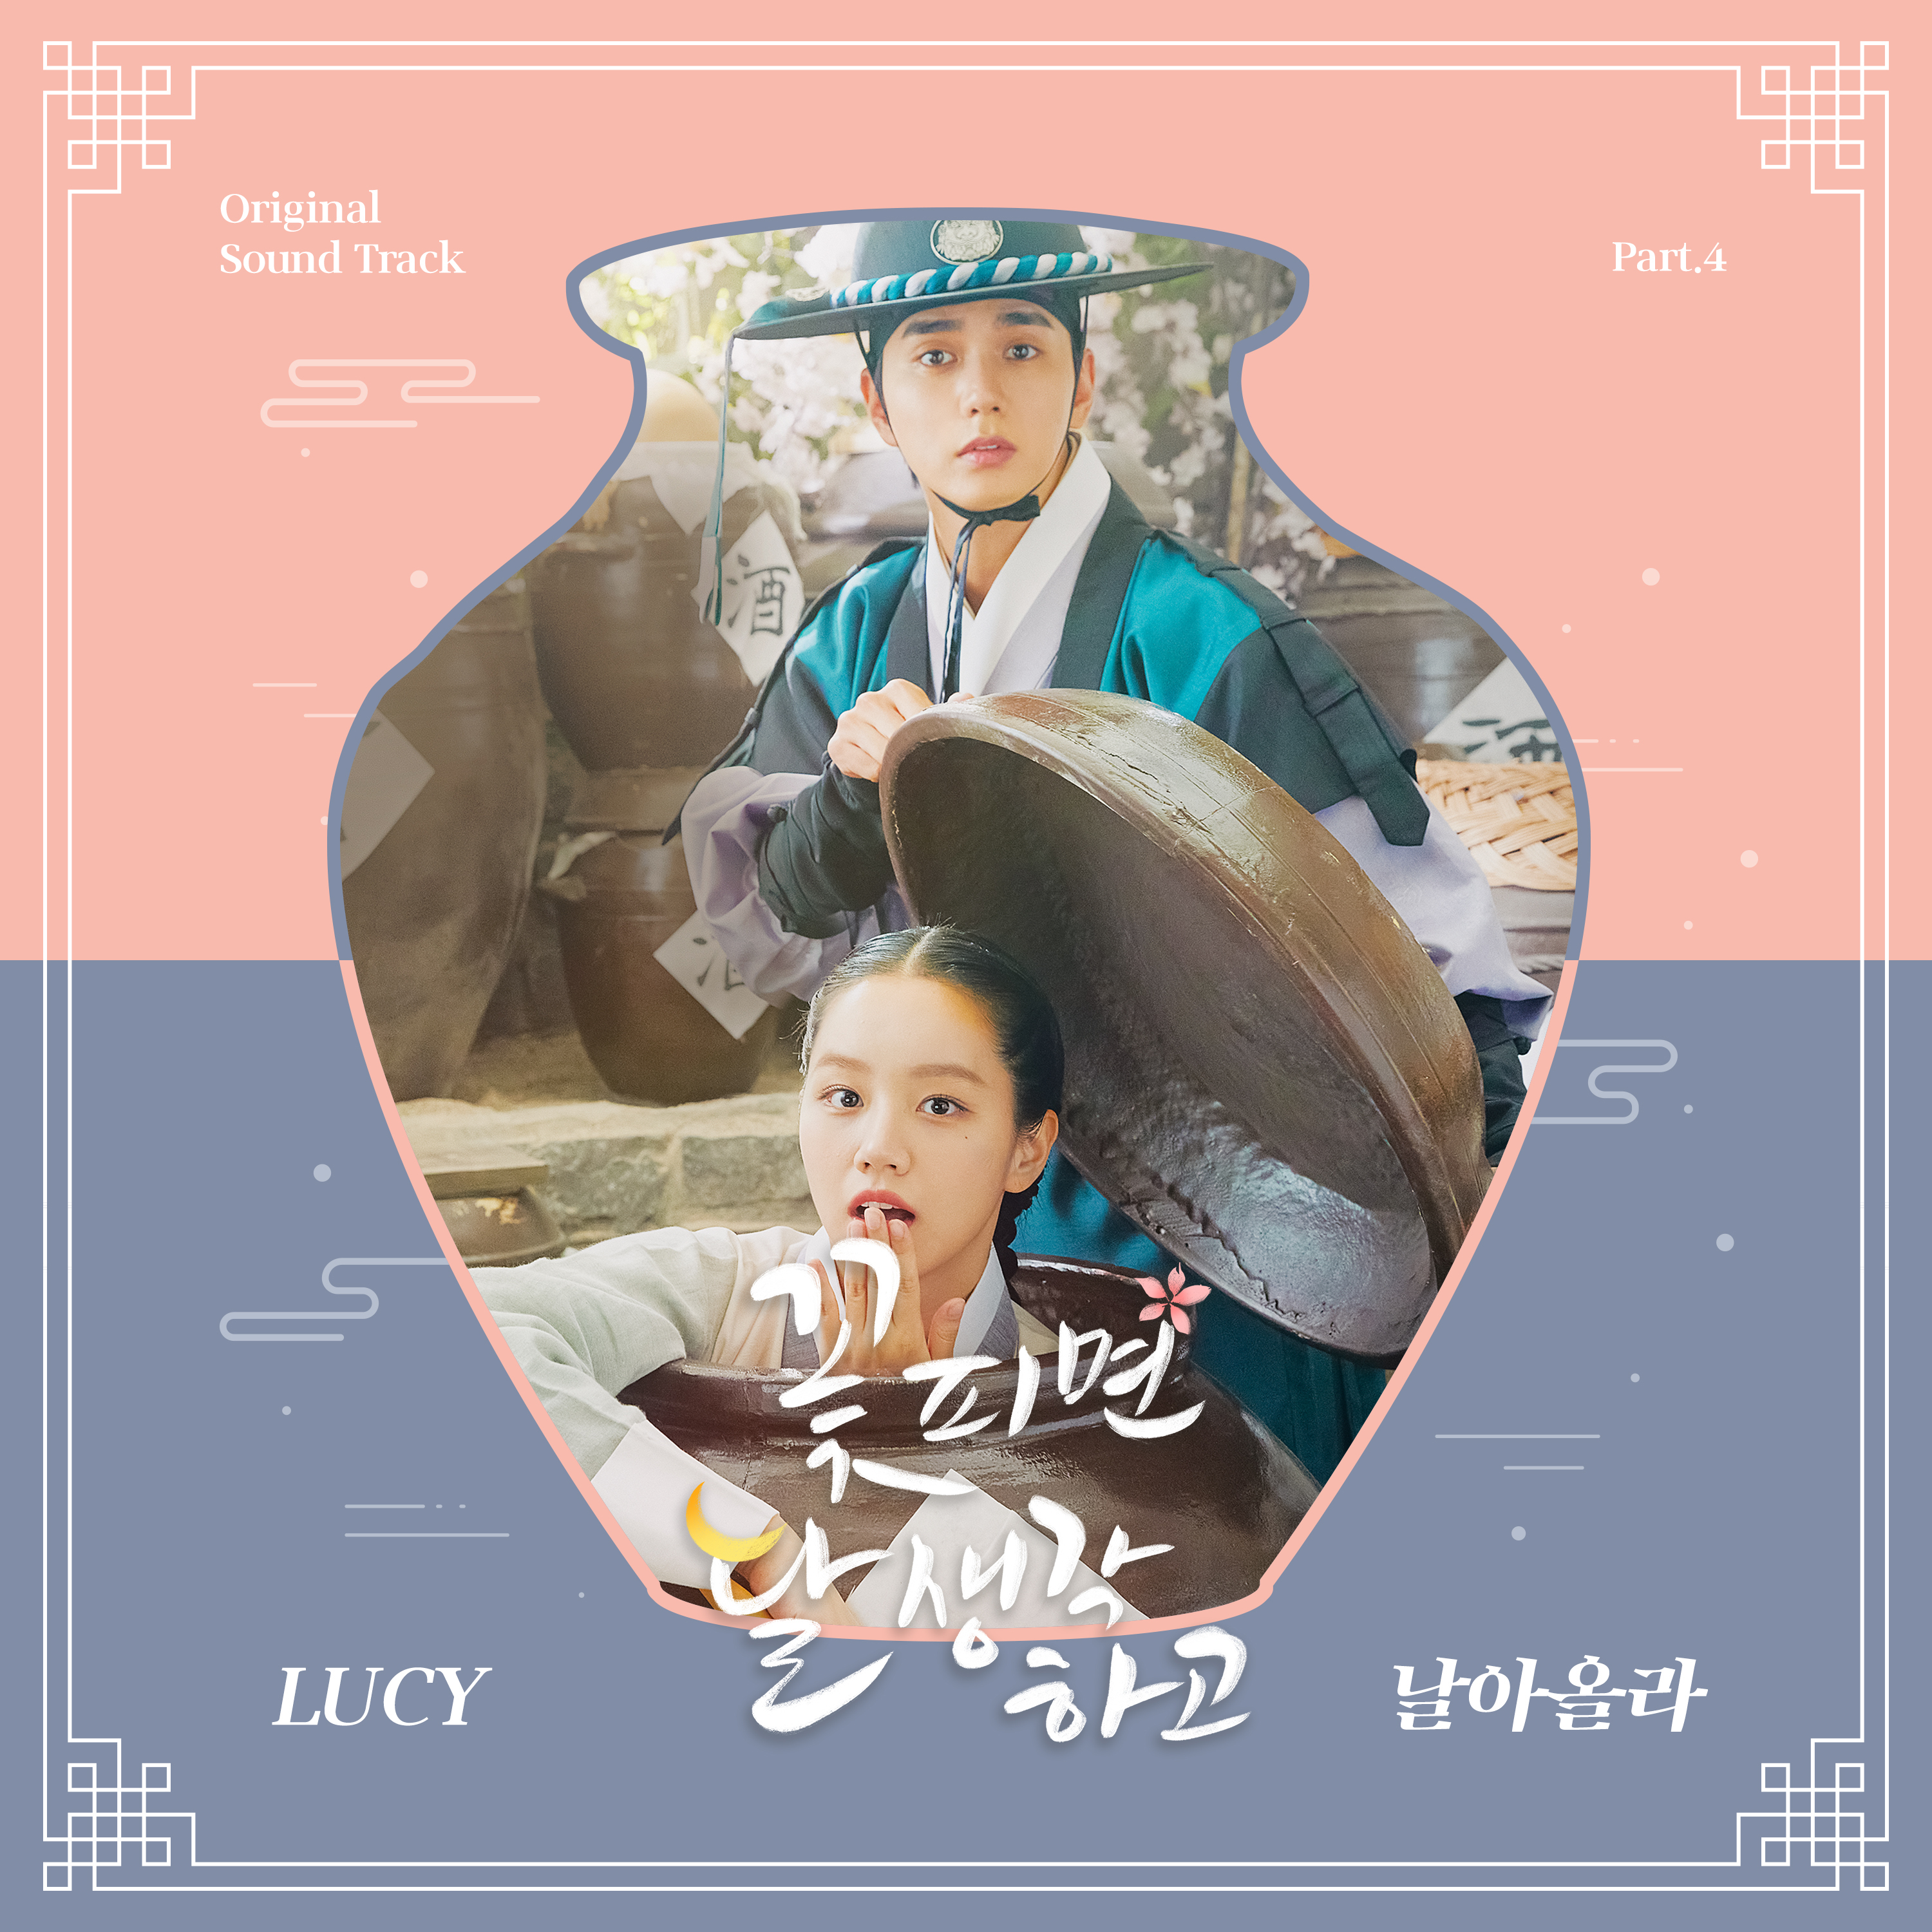 [影音] 花開時想月 OST Part.4 - LUCY